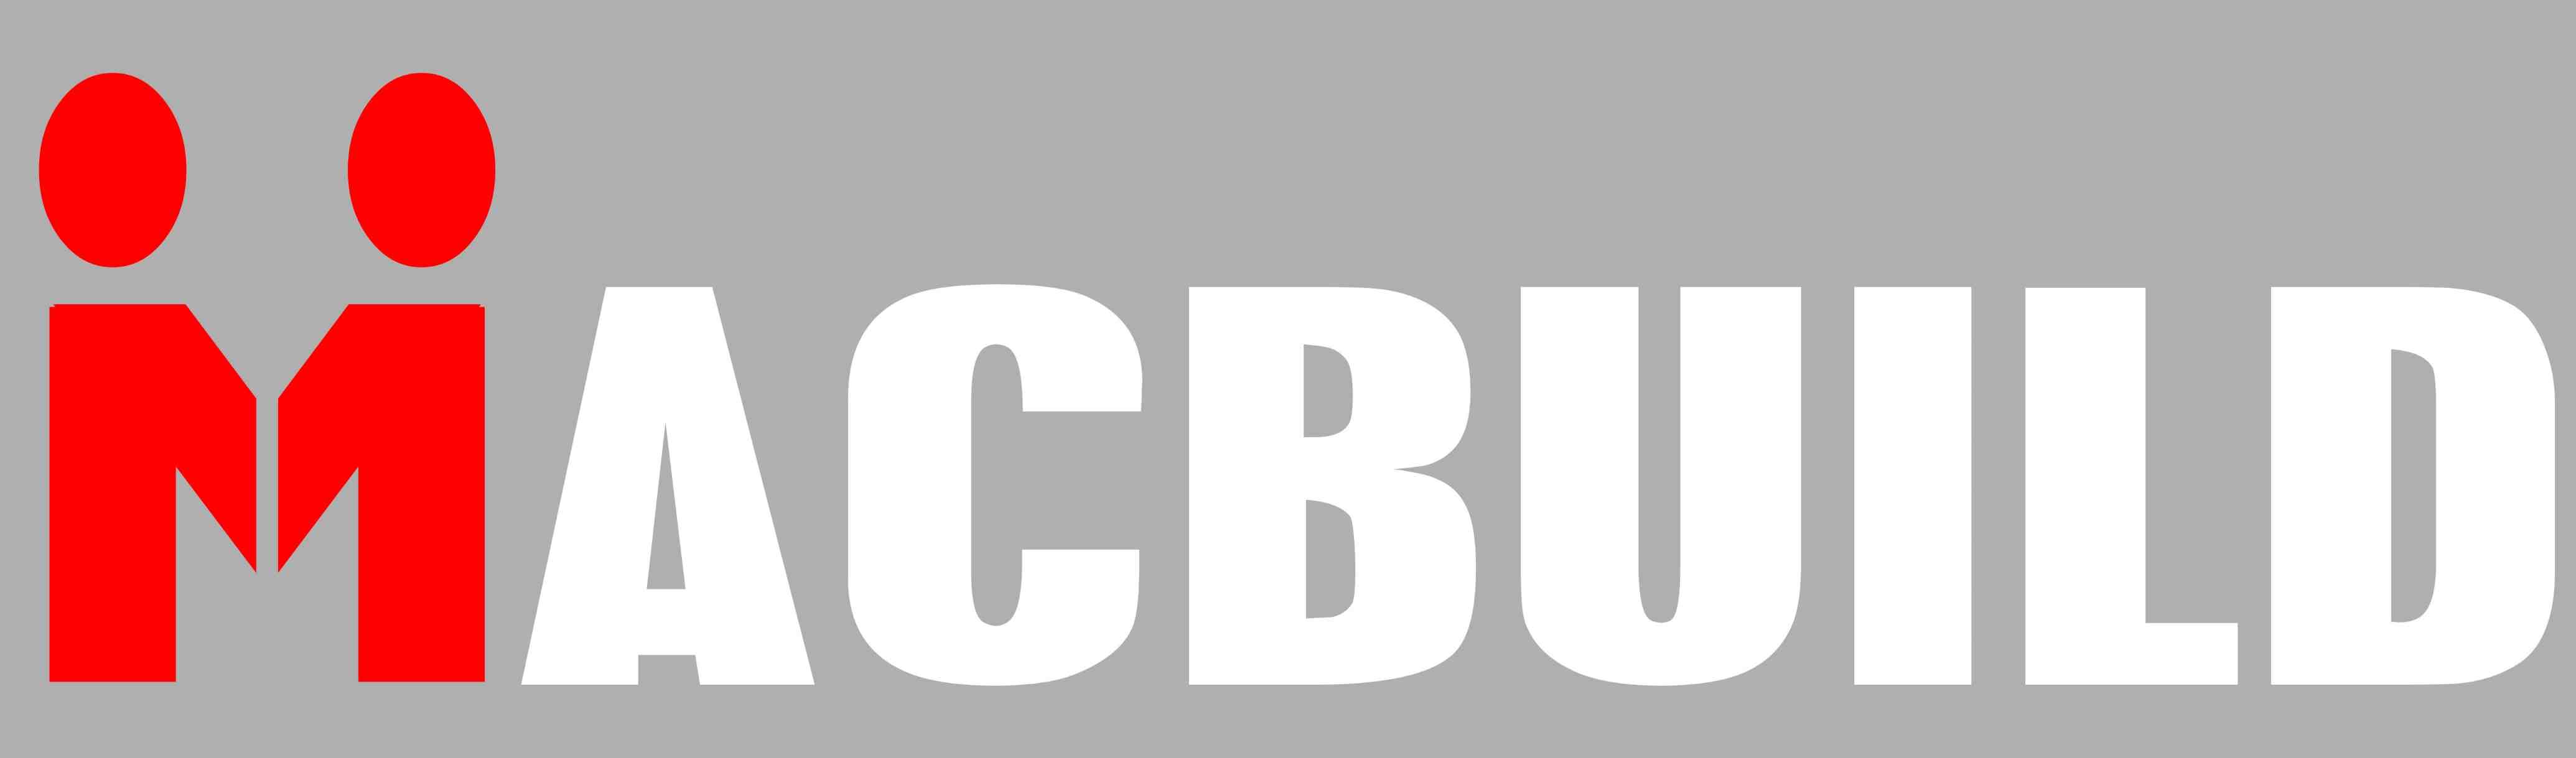 Macbuild Construction Pte. Ltd. logo